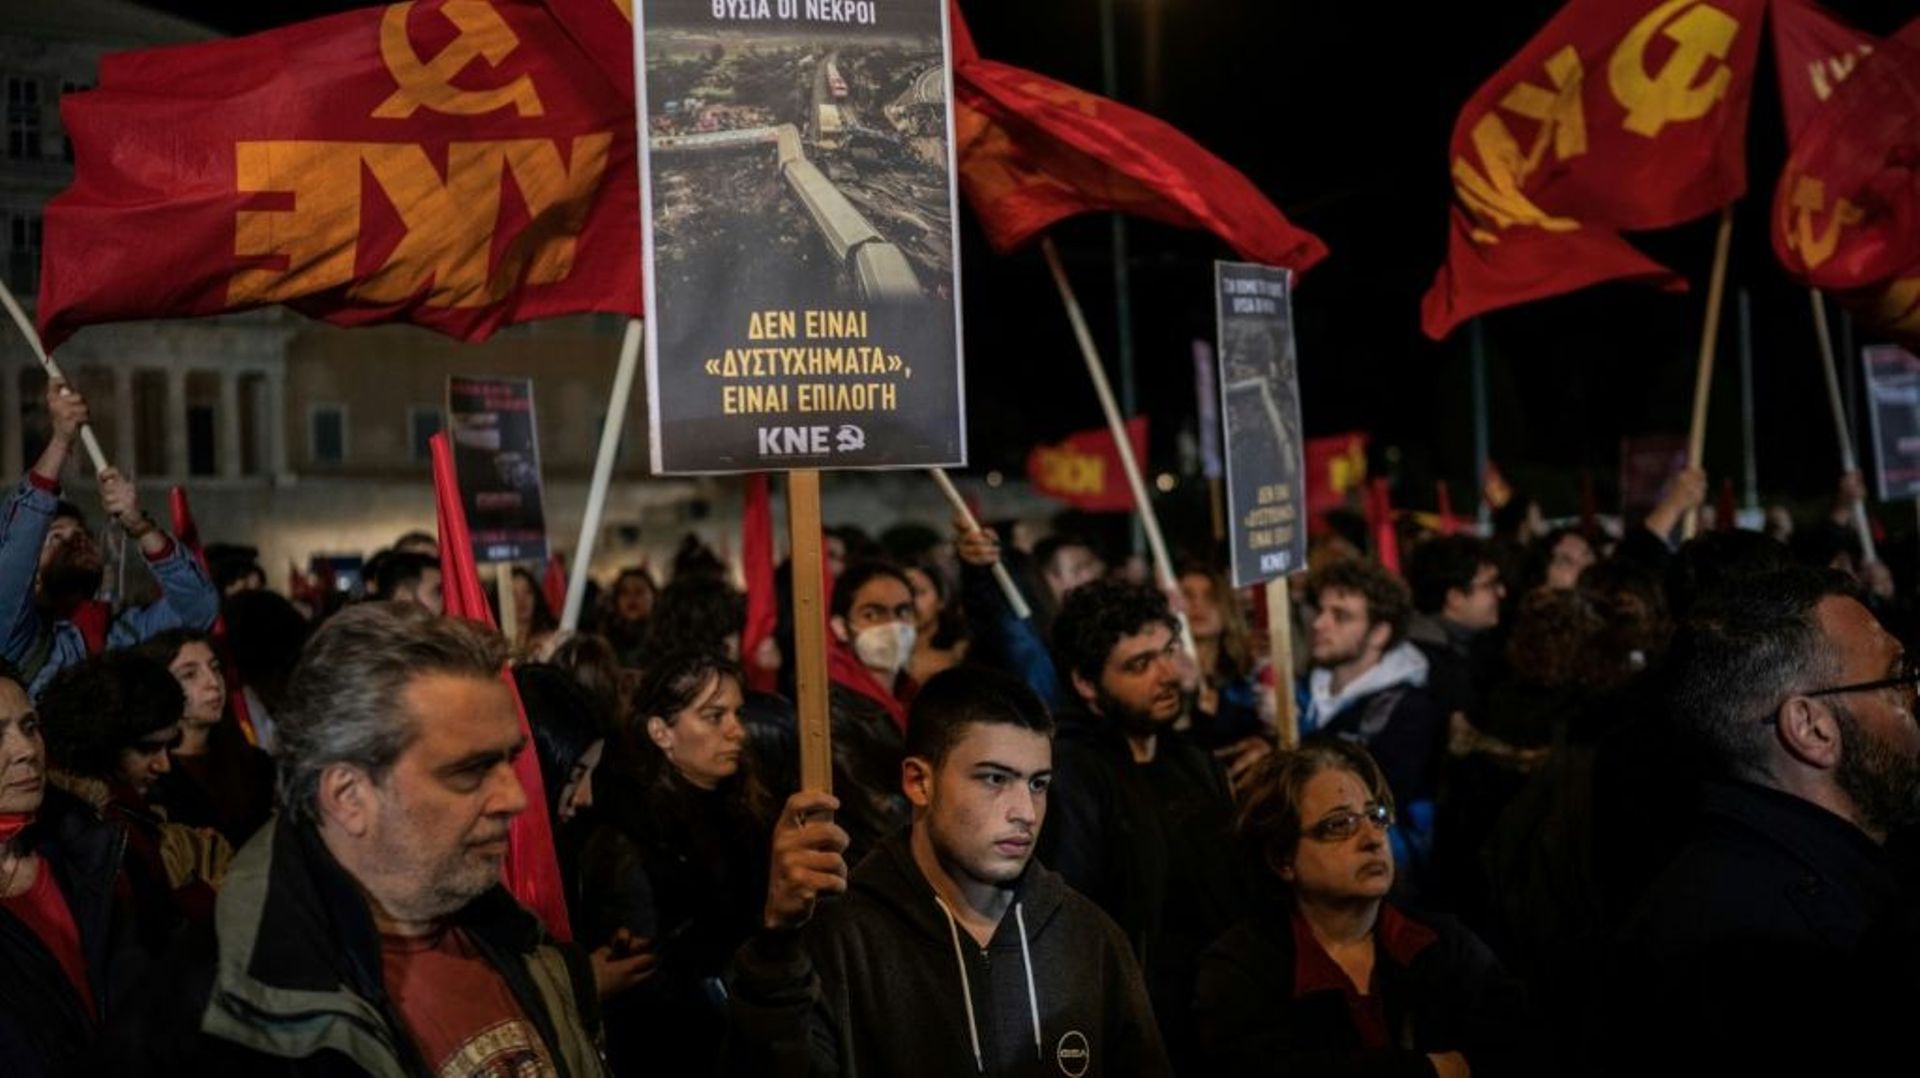 Manifestations de colère des soutiens du parti communiste grec  à Athènes, le 4 mars 2023, après la catastrophe ferroviaire en Grèce